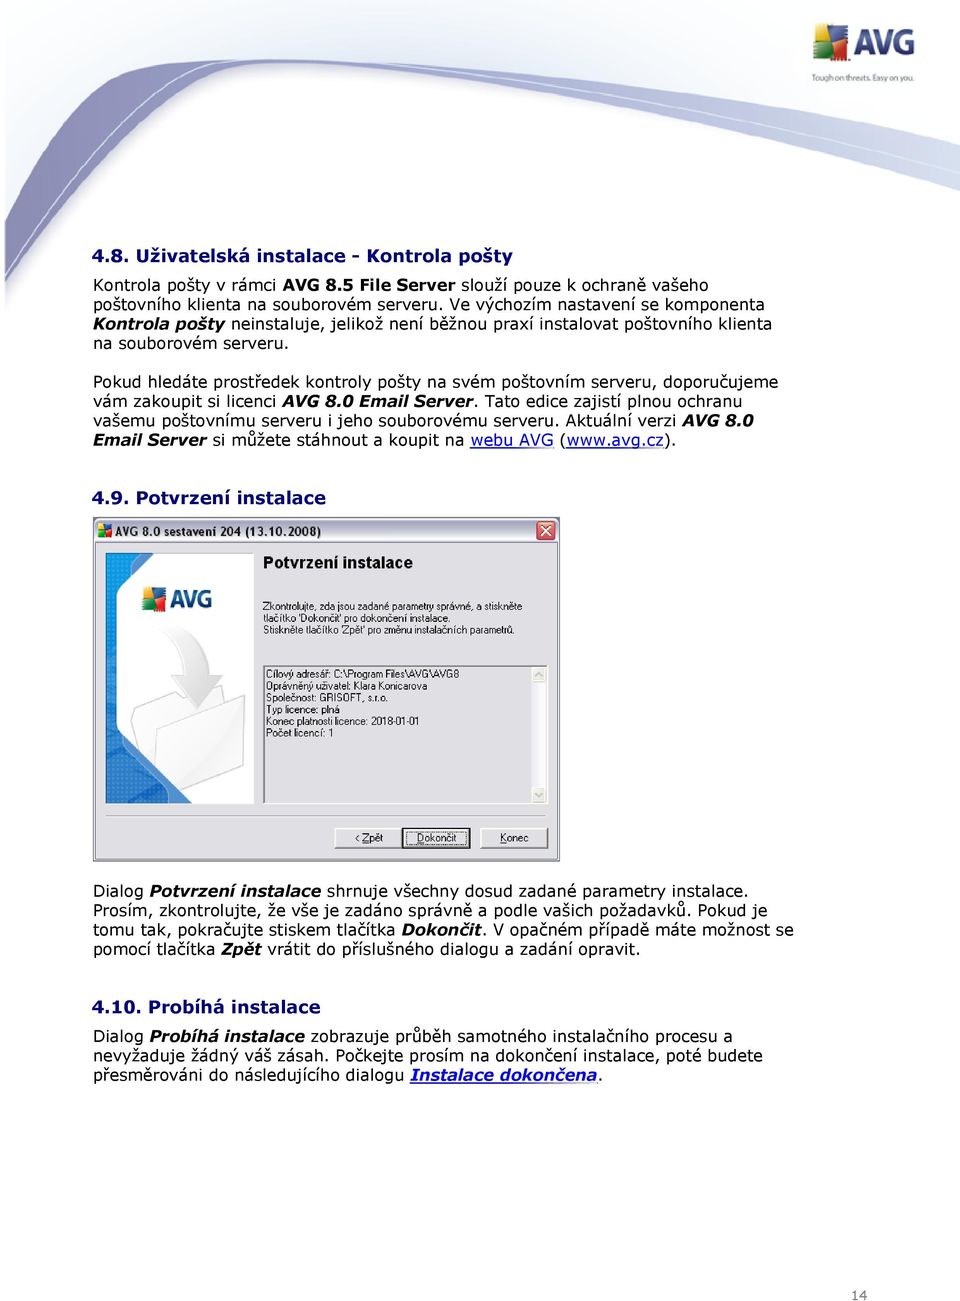 Pokud hledáte prostředek kontroly pošty na svém poštovním serveru, doporučujeme vám zakoupit si licenci AVG 8.0 Email Server.